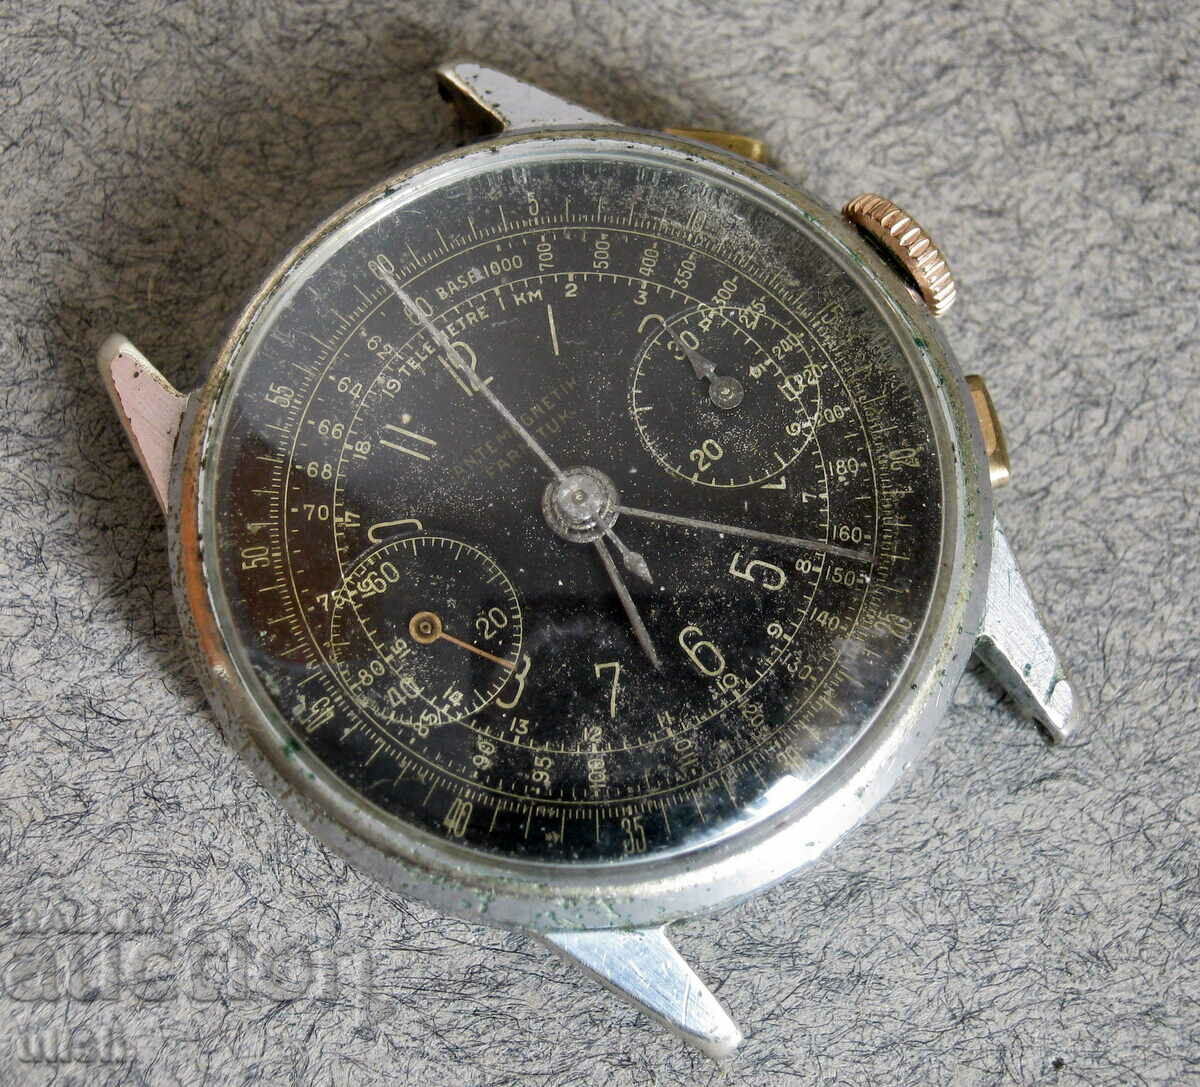 Chronograph Landeron 148 military chronograph